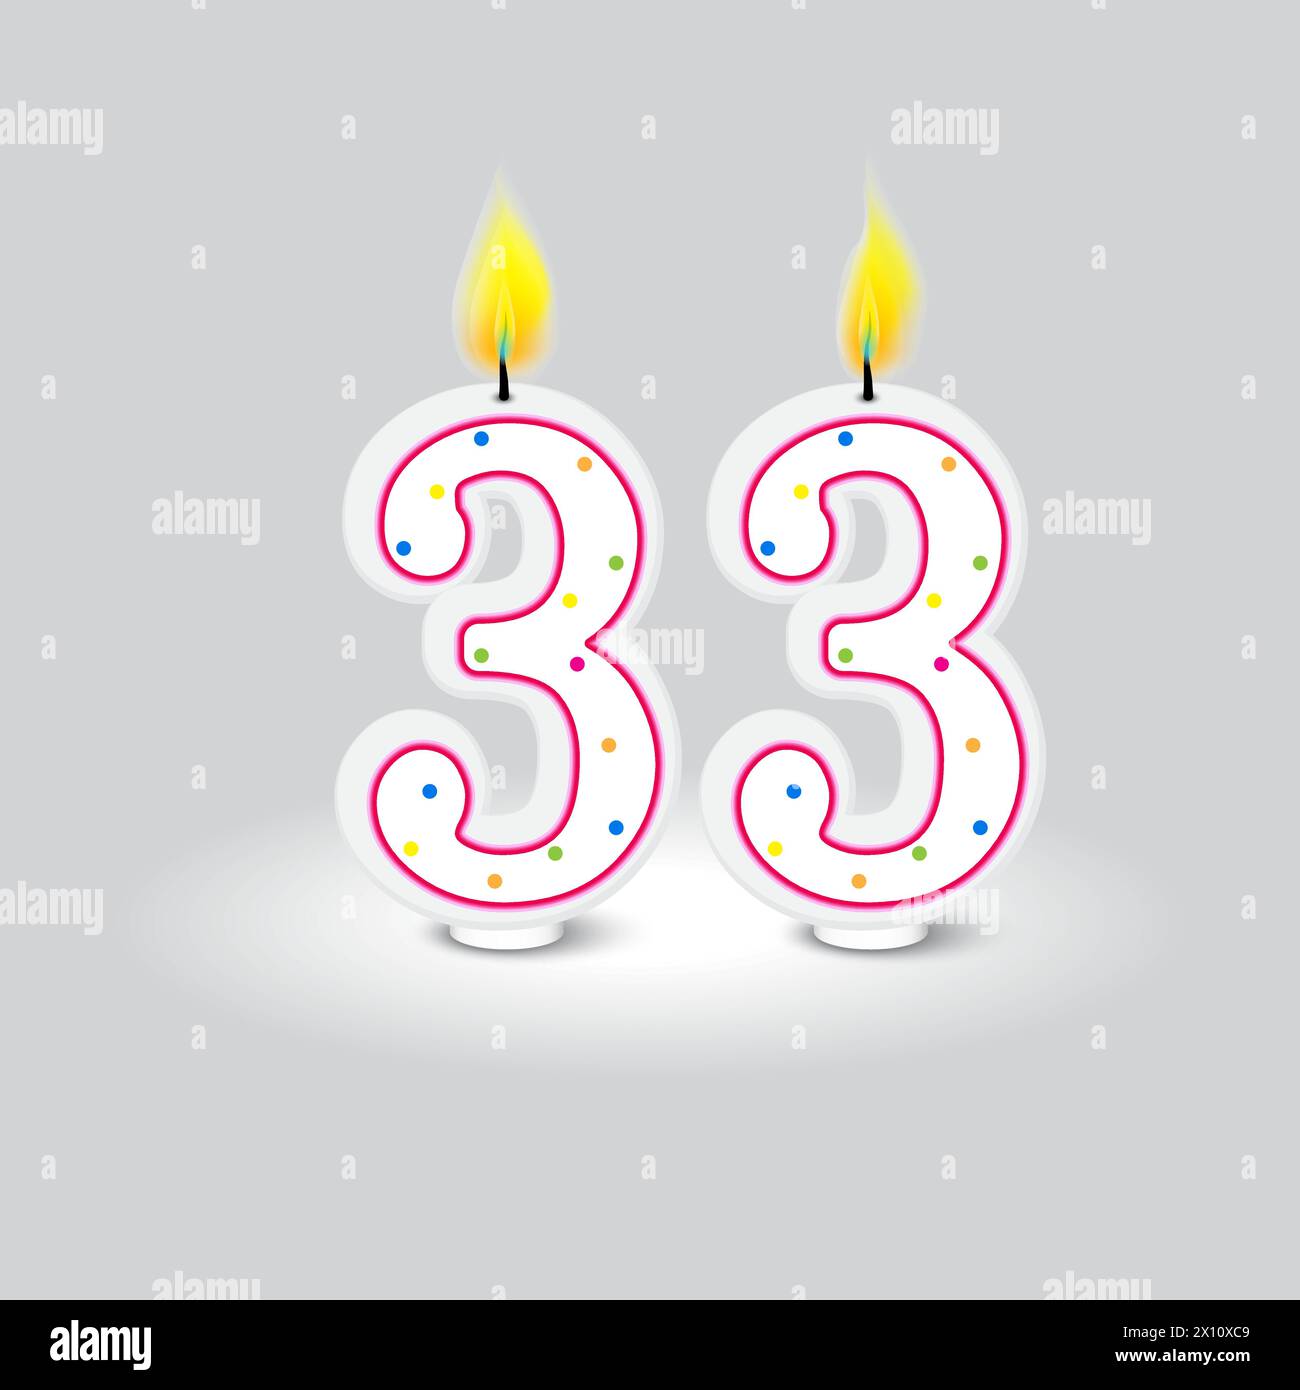 Design delle candele per festeggiare il 33° compleanno. Puntini colorati su due fiamme bianche. Illustrazione vettoriale. EPS 10. Illustrazione Vettoriale